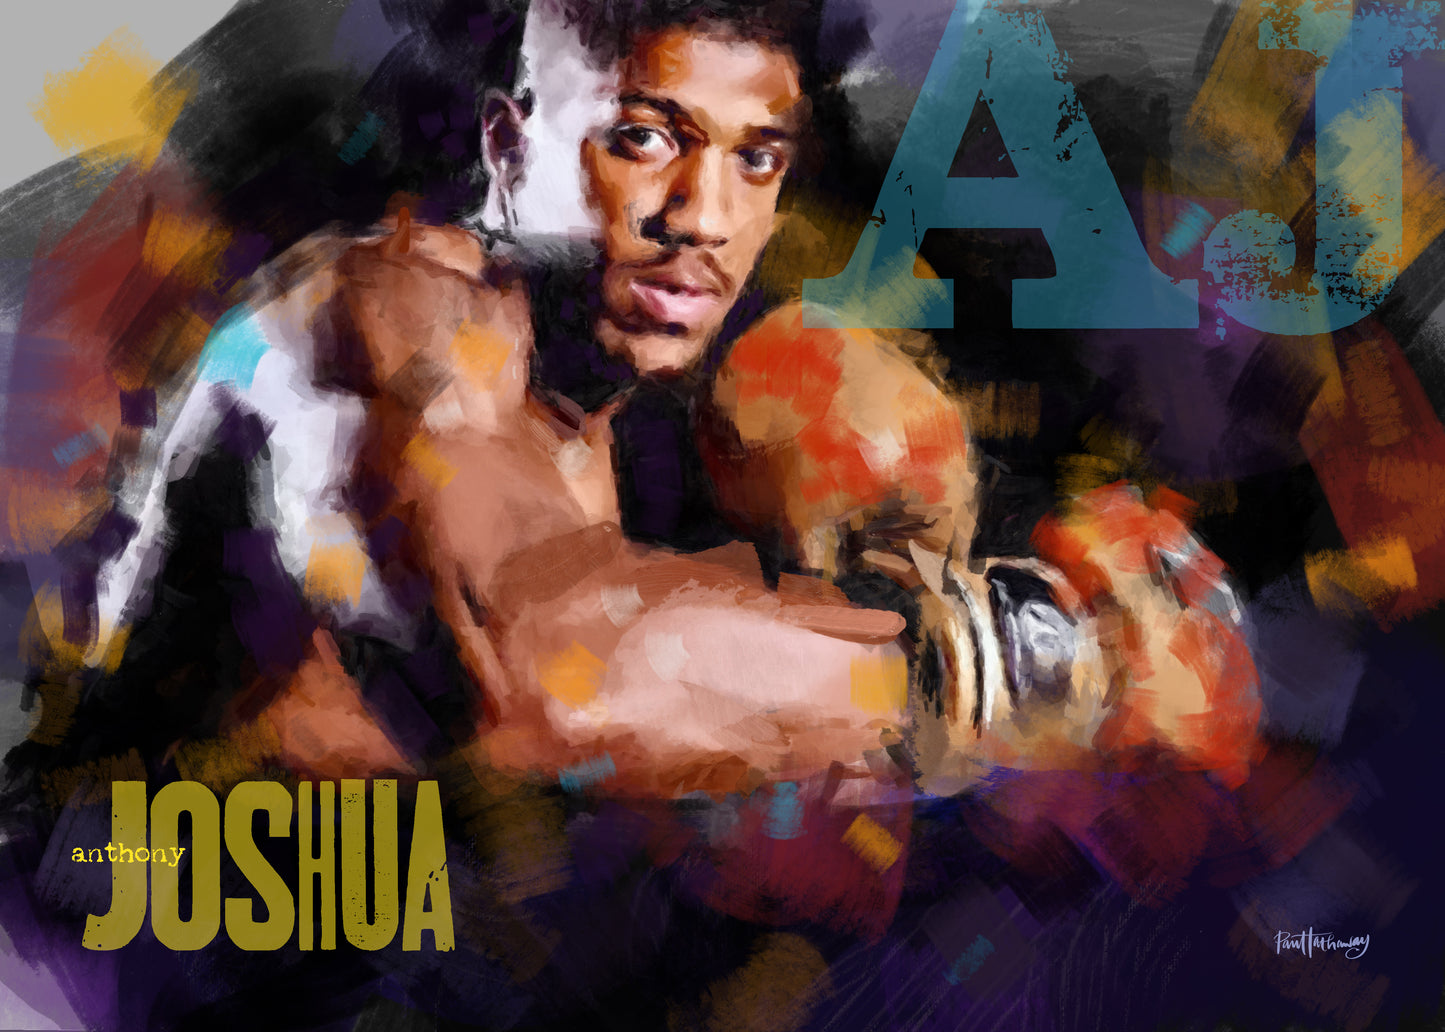 Anthony Joshua - Boxing Art Print - Option 1